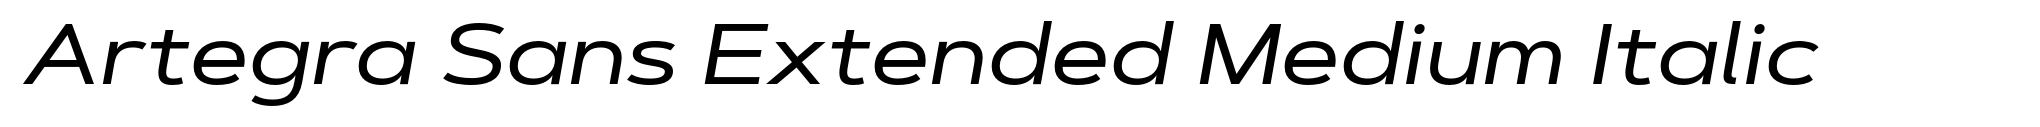 Artegra Sans Extended Medium Italic image